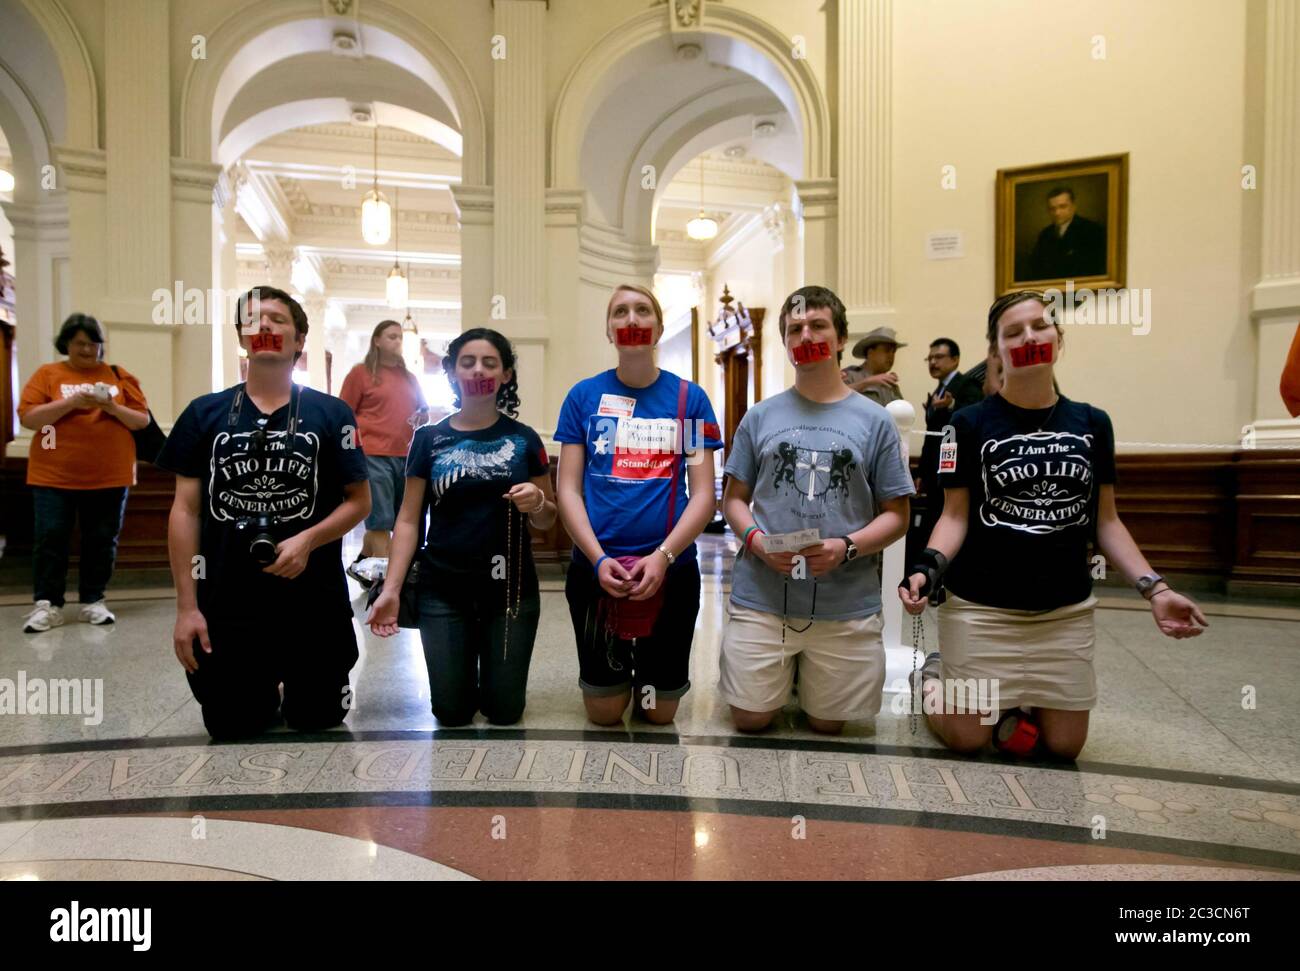 11 juillet 2013 Austin, Texas Etats-Unis: Les opposants à l'avortement, s'agenouiller et avec le mot 'vie' enregistré sur leur bouche, priez lors d'un rallye pro-vie au Capitole du Texas. Des centaines de partisans pro-vie et pro-choix se sont retrouvés dans le bâtiment alors que les sénateurs d'État débattaient de HB2, une loi controversée imposant des restrictions plus strictes sur l'accès des femmes à l'avortement. Le projet de loi a été adopté avec 19-11 voix, les 18 Républicains et 1 Démocrates votant oui. Plus tôt dans la session, l'obstruction parlementaire du sénateur Wendy Davis a retardé l'action sur le projet de loi. ©Marjorie Kamys Cotera/ Daemmrich Photographie Banque D'Images